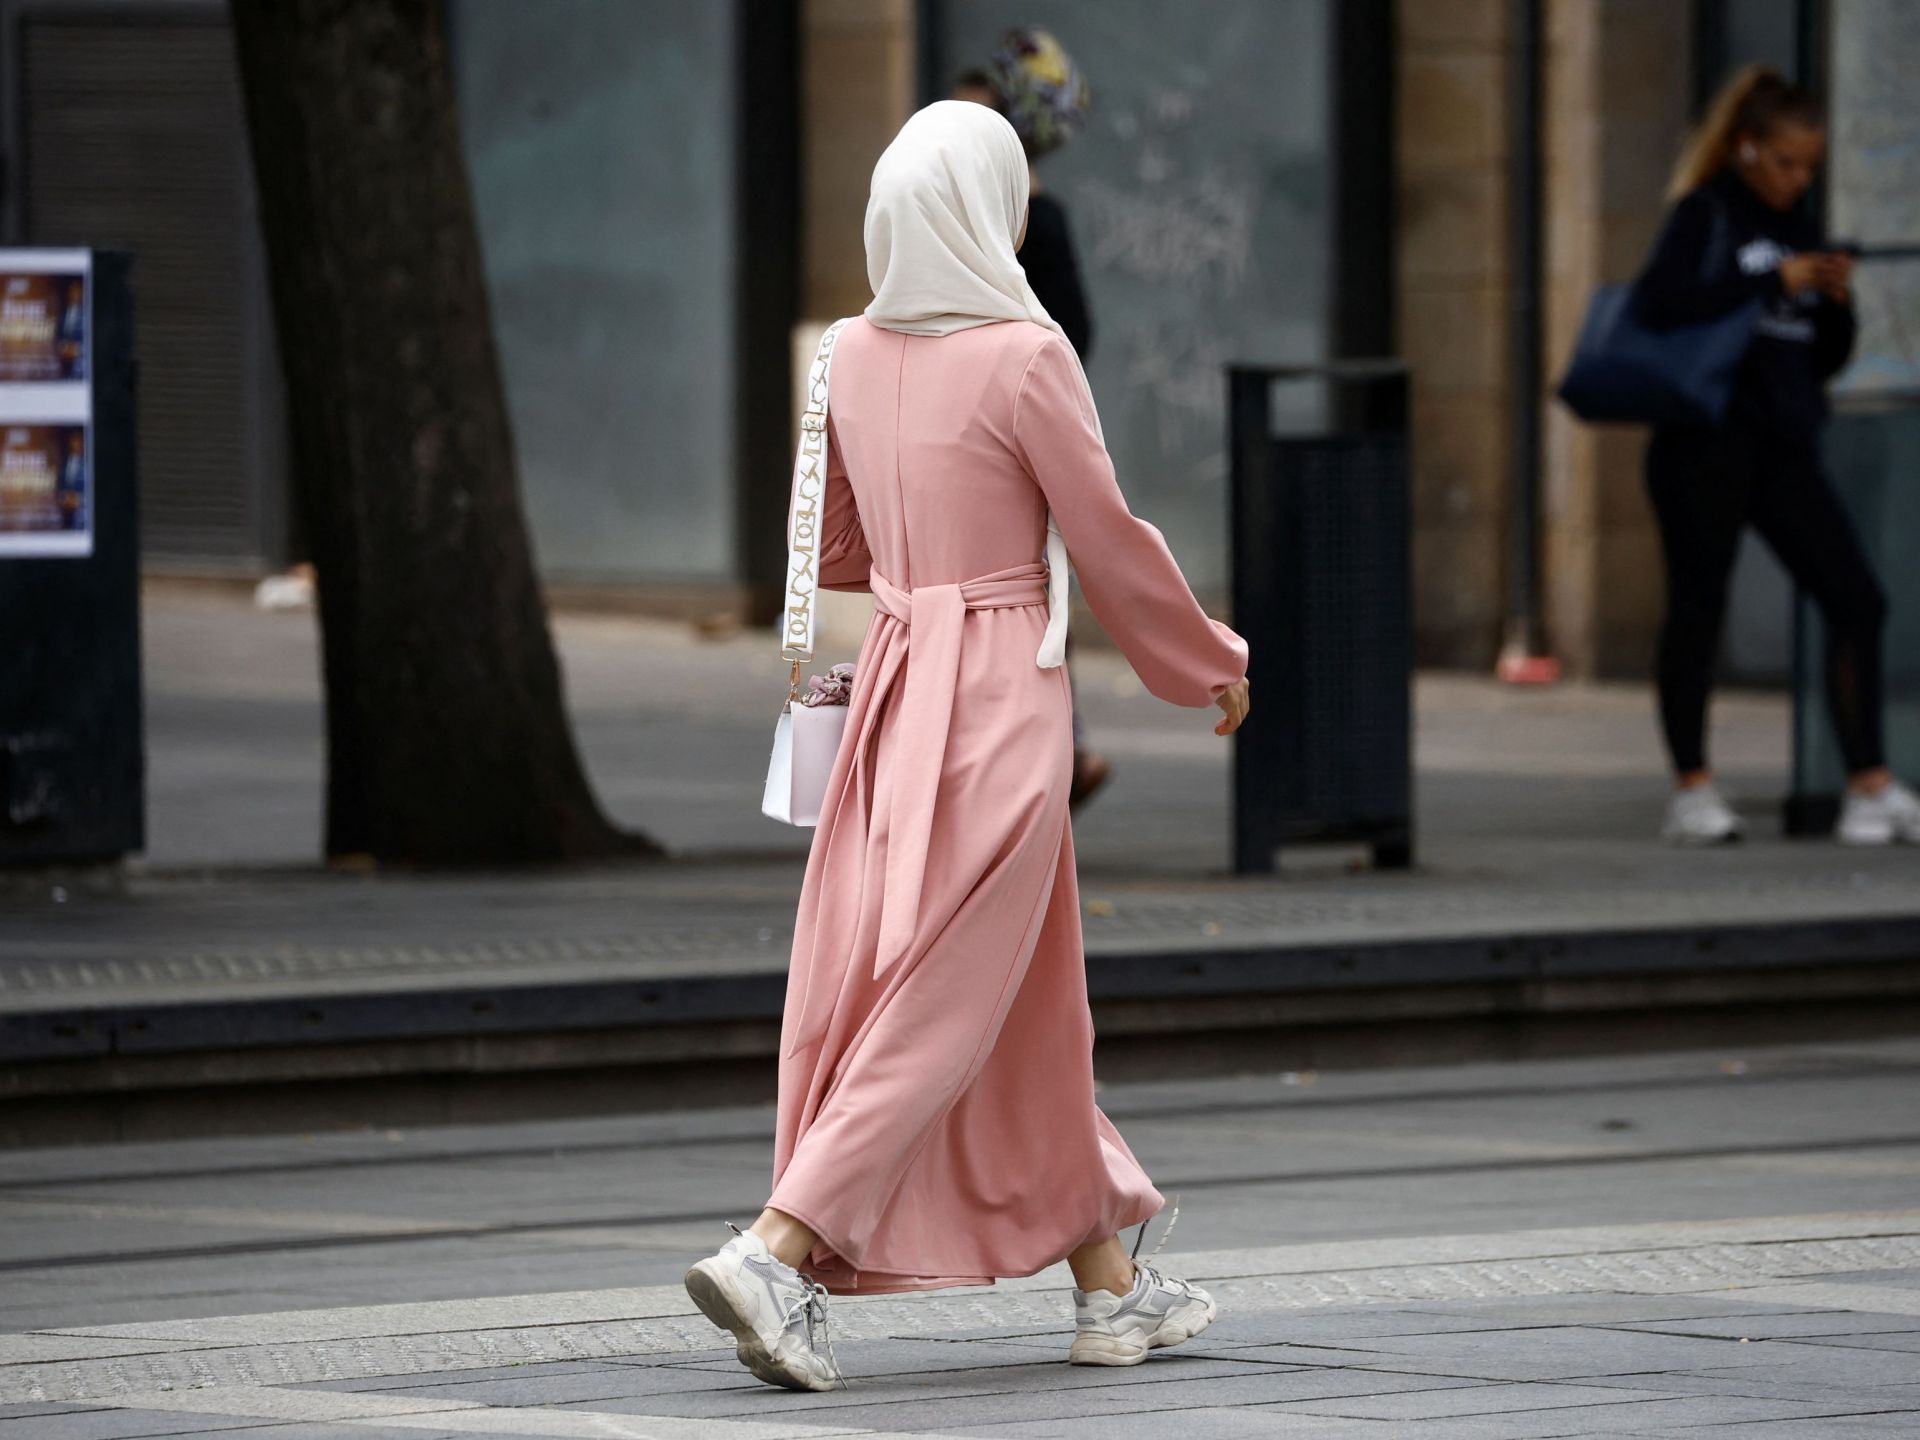 Un chercheur en droits humains considère que l'interdiction des abayas et des hijabs en France porte préjudice aux musulmans de la société – Hurriyat News